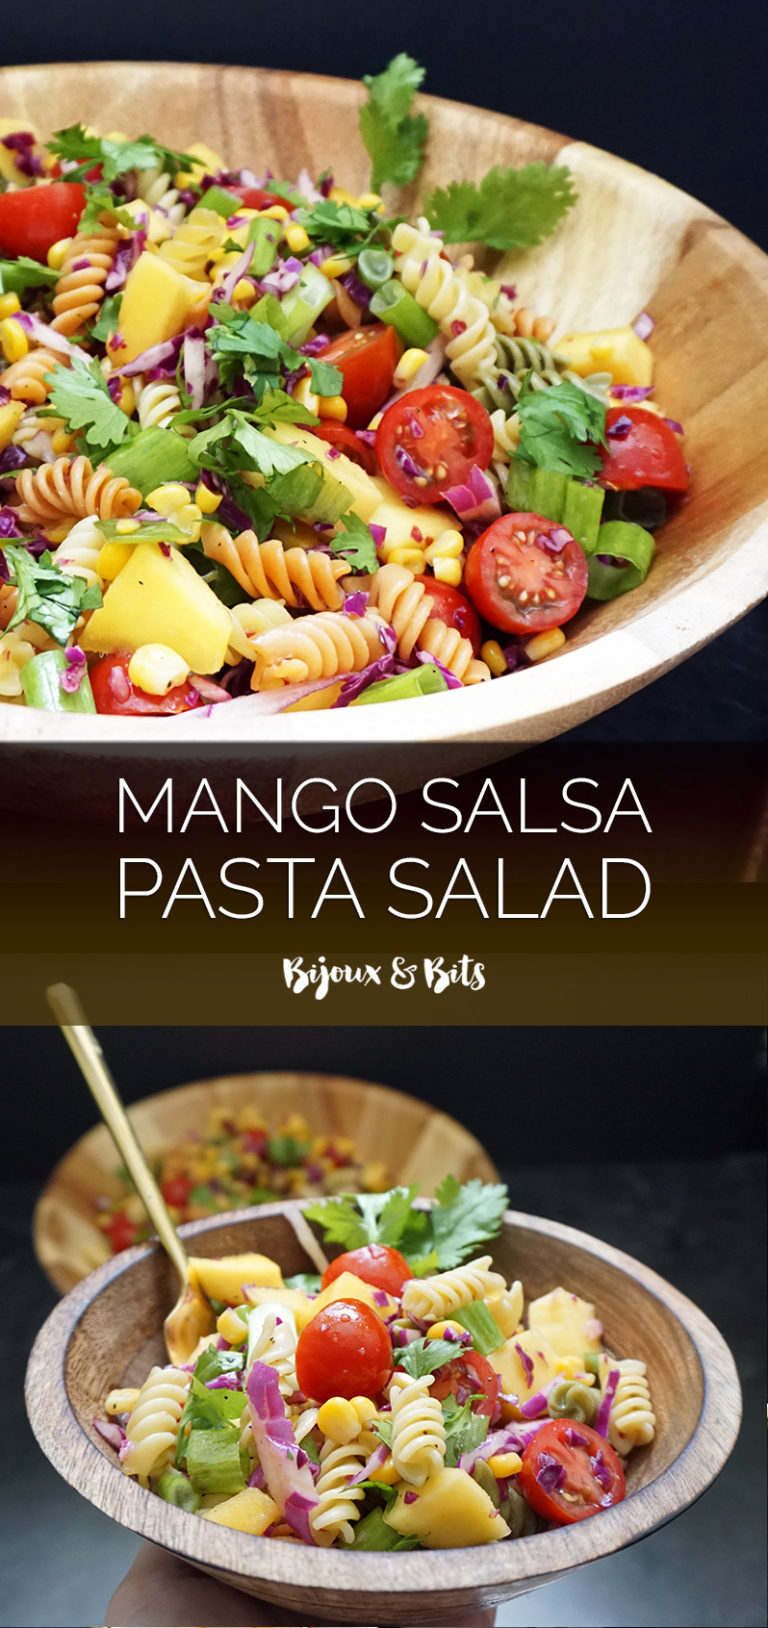 Mango salsa pasta salad | Bijoux & Bits